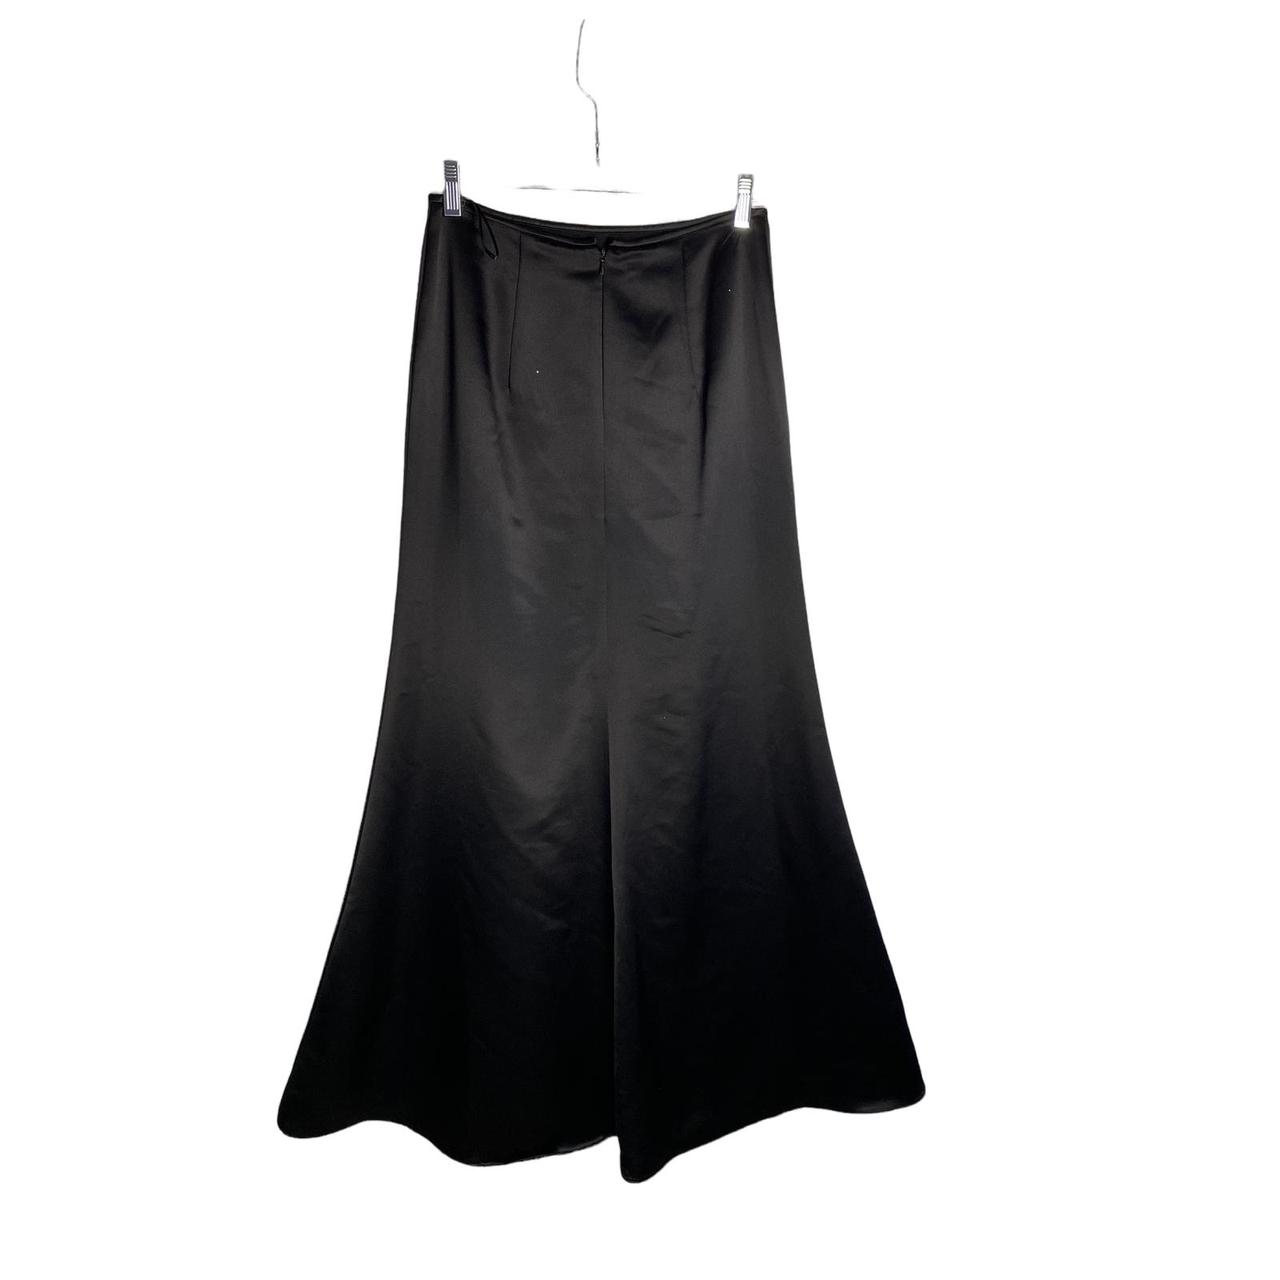 Jessica McClintock Vintage Satin Maxi Skirt Size... - Depop